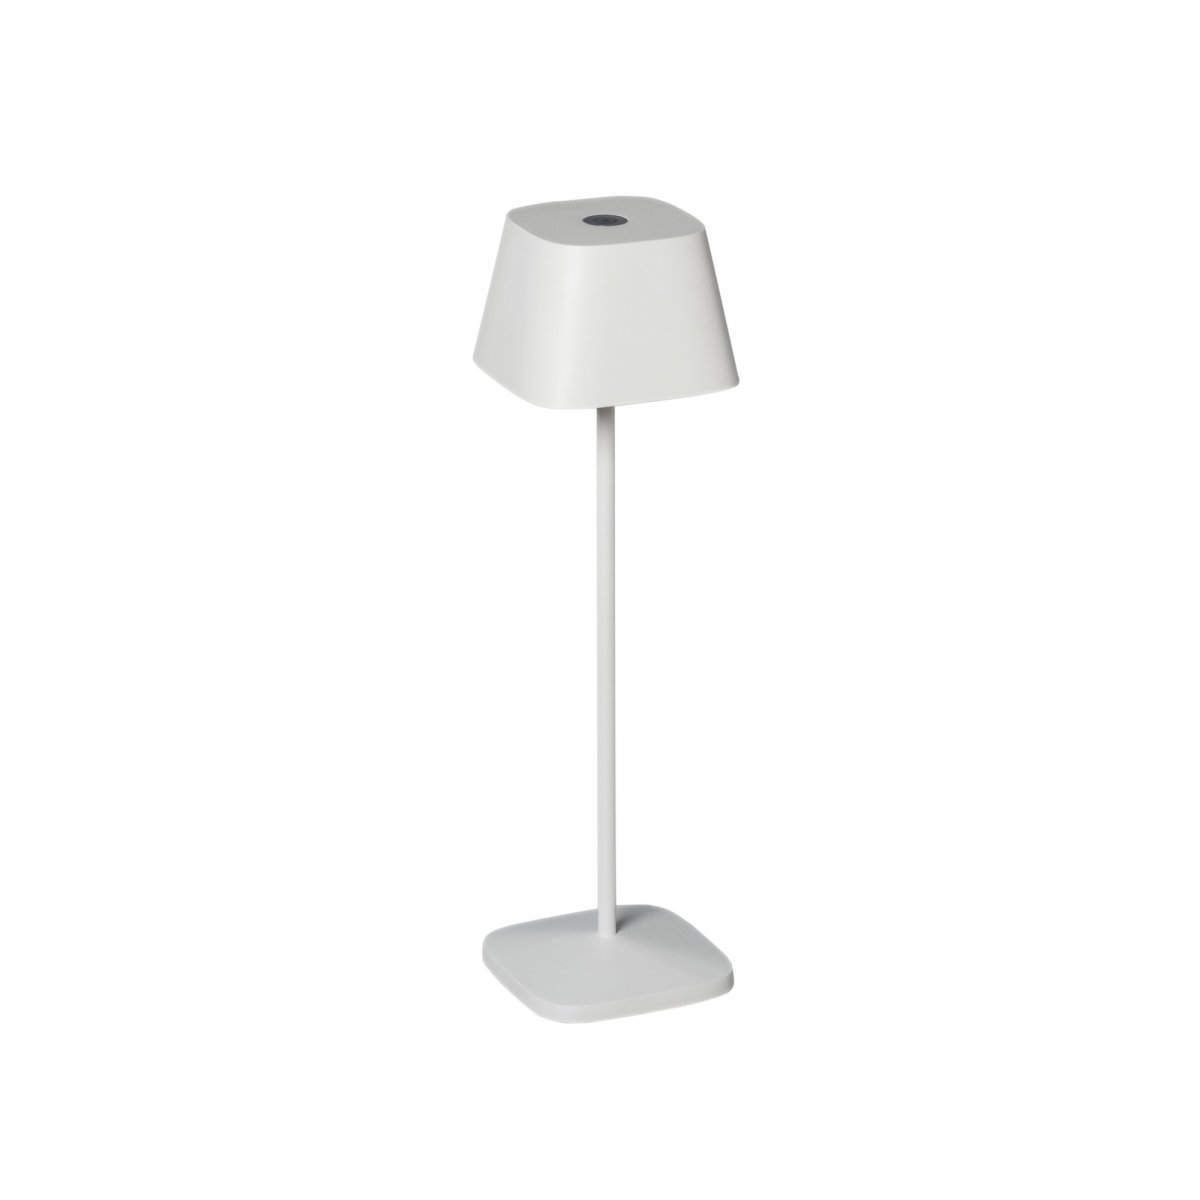 KONSTSMIDE No. 7814-250 USB Tischleuchte Capri weiß dimmbar IP54 -->  Leuchten & Lampen online kaufen im Shop lightkontor